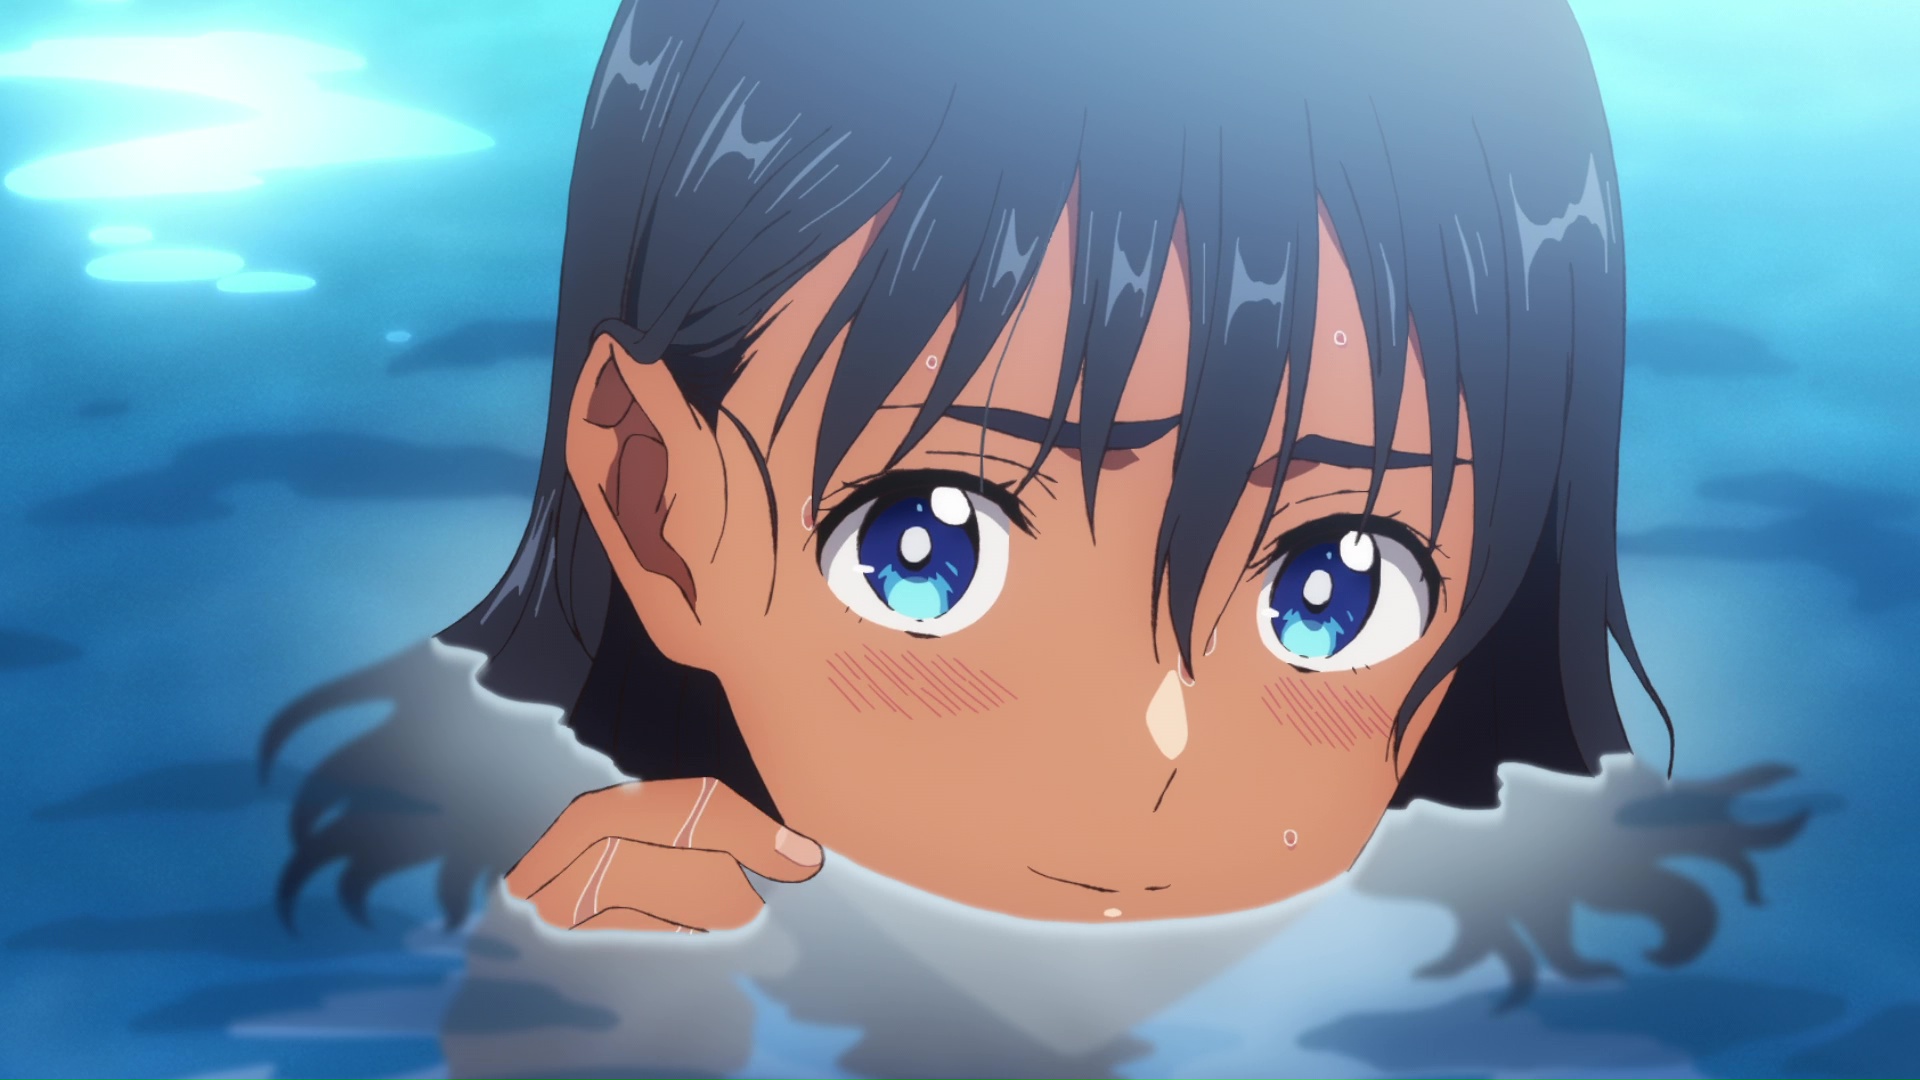 Recomendação de anime - Summer Time Rendering, um anime de tirar o fôlego